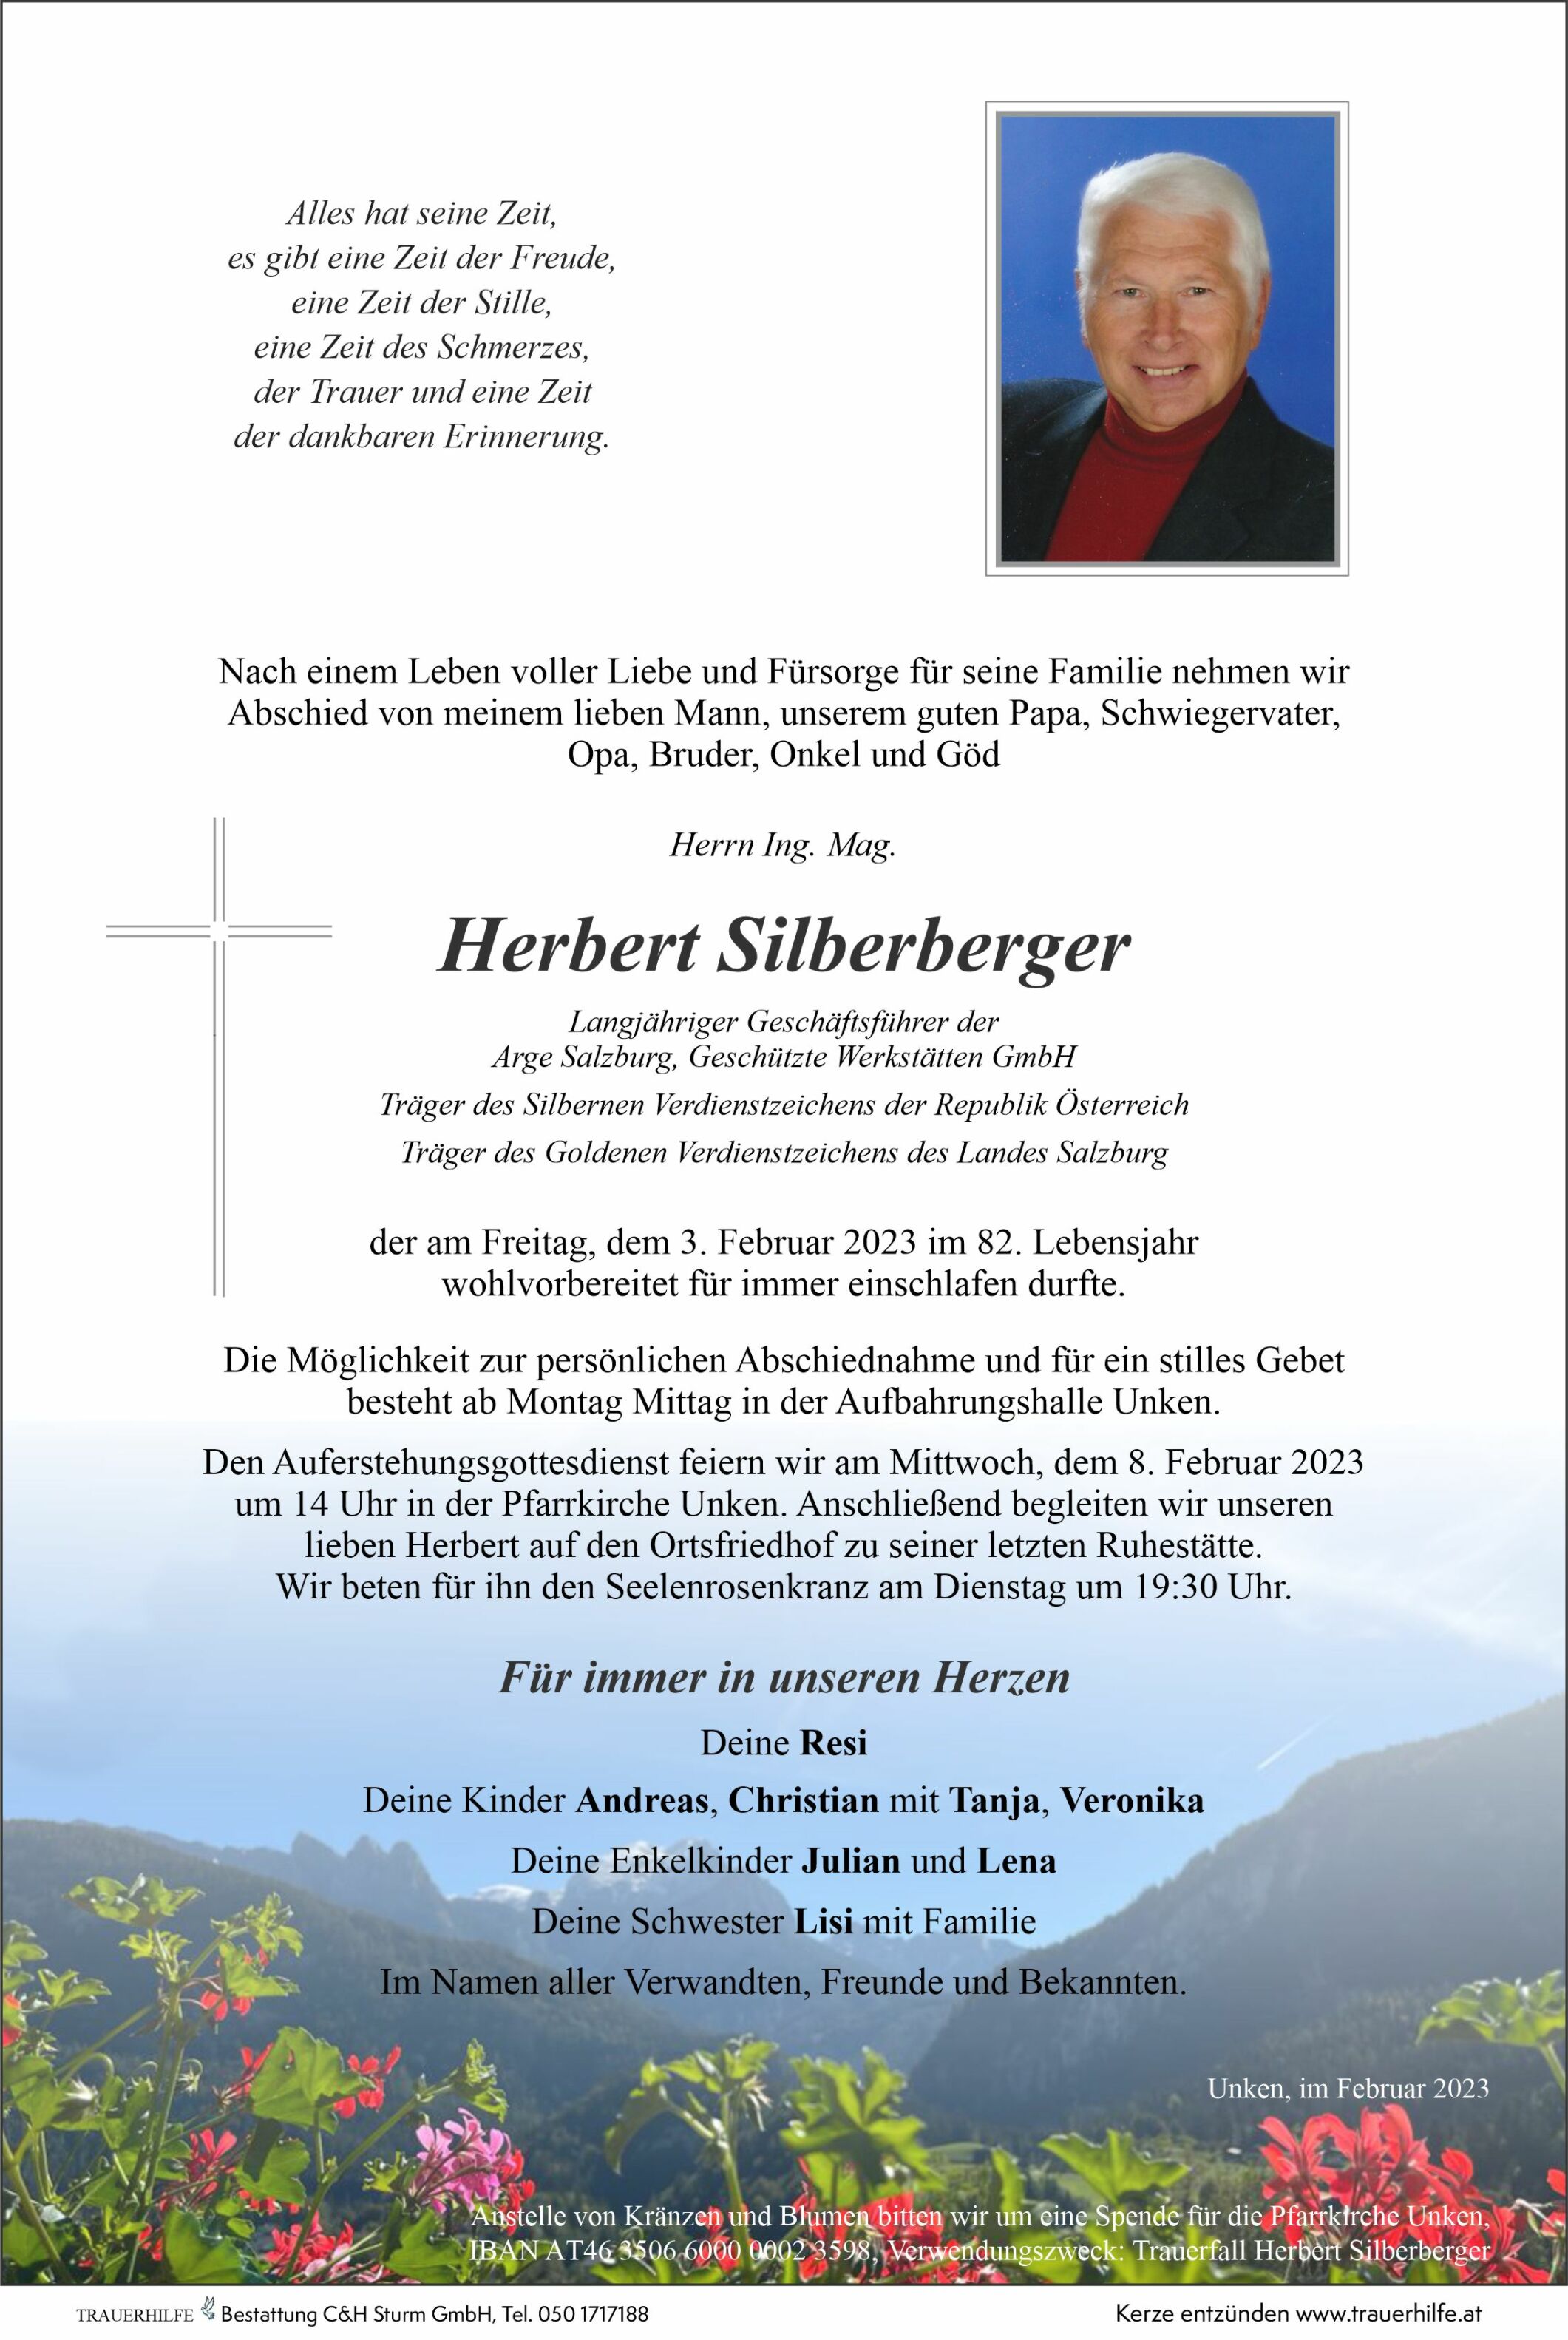 Herbert Silberberger